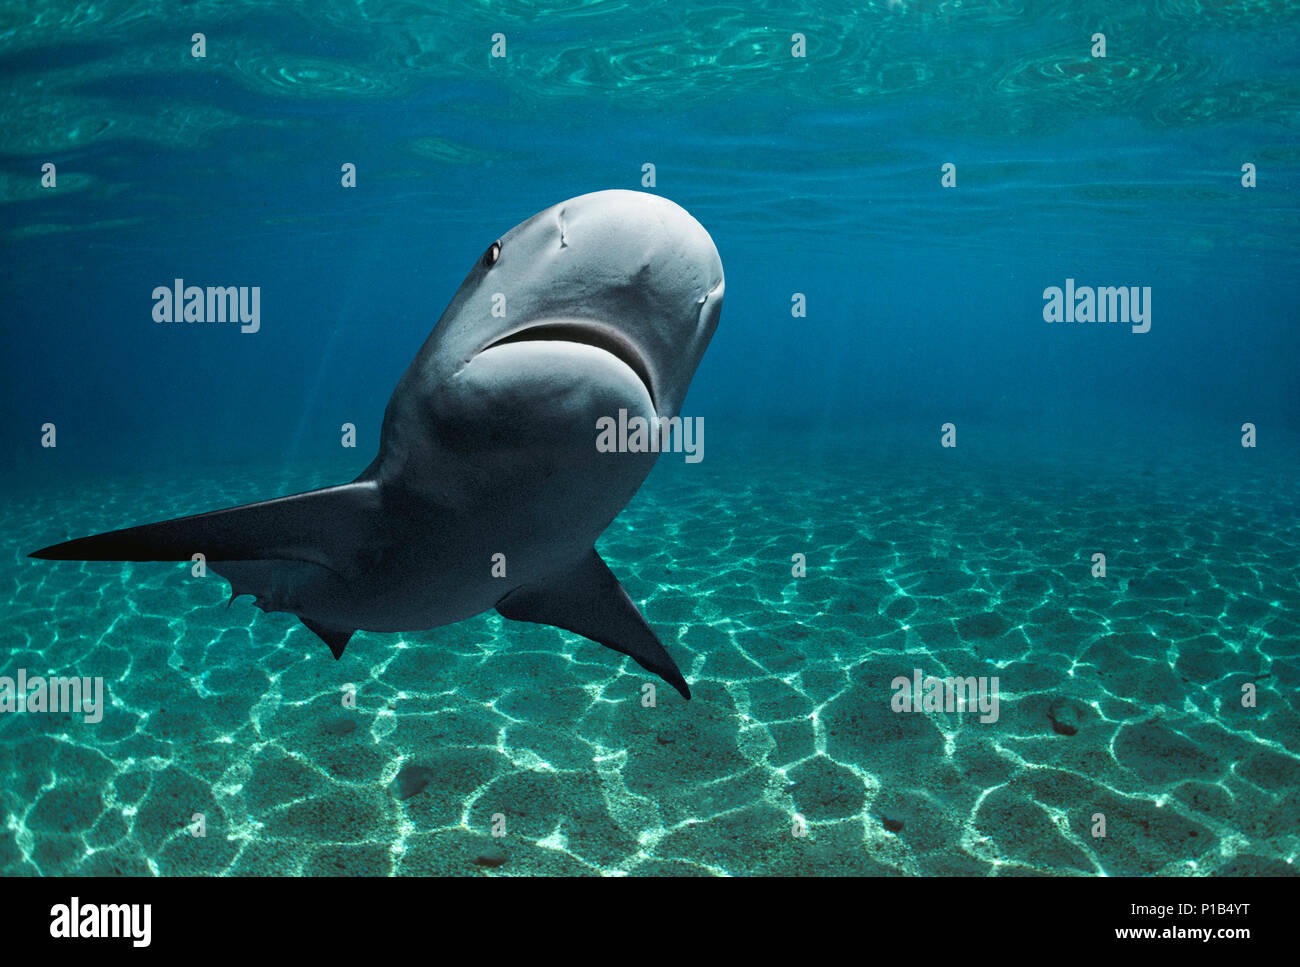 Karibische Riffhai (Carcharhinus perezi), Bahamas - Karibik. Bild digital geändert zu entfernen störende oder interessanter backgr hinzufügen Stockfoto